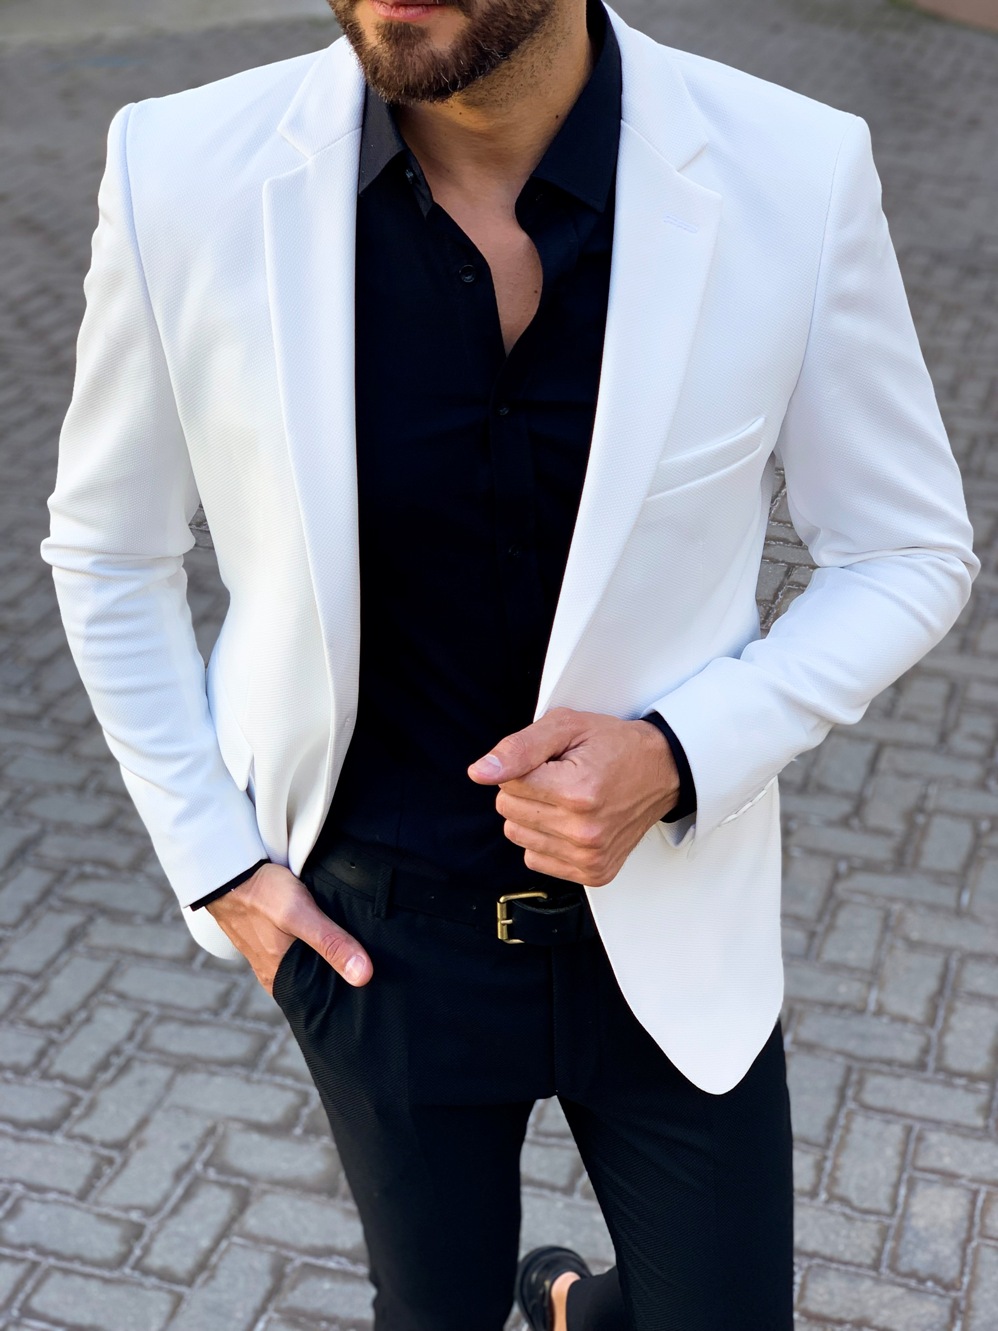 Белый мужской пиджак. Арт.:2-1102-5 – купить в магазине мужской одеждыSmartcasuals